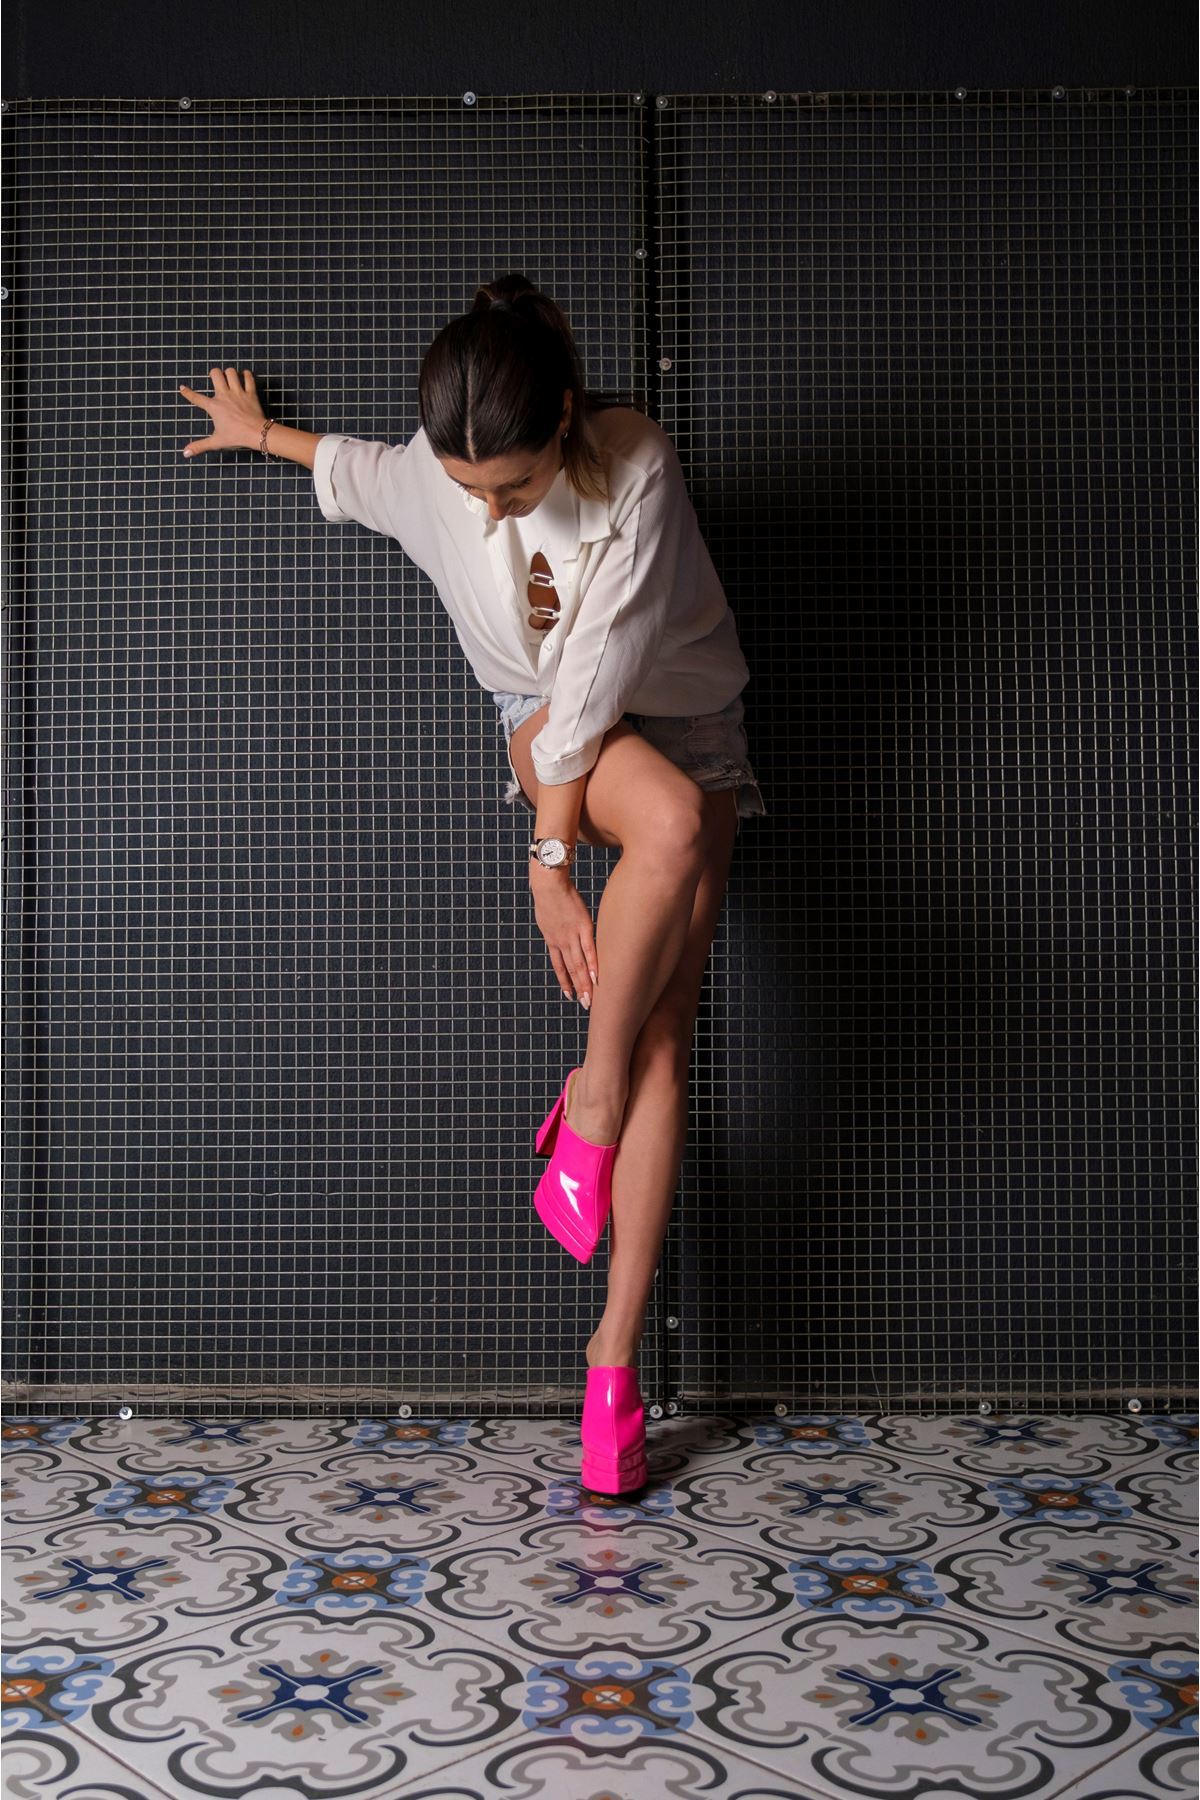 Fuşya Rugan Çift  Platform Tasarım Burnu Kapalı Kadın Terlik Yüksek Topuklu Ayakkabı Sortie